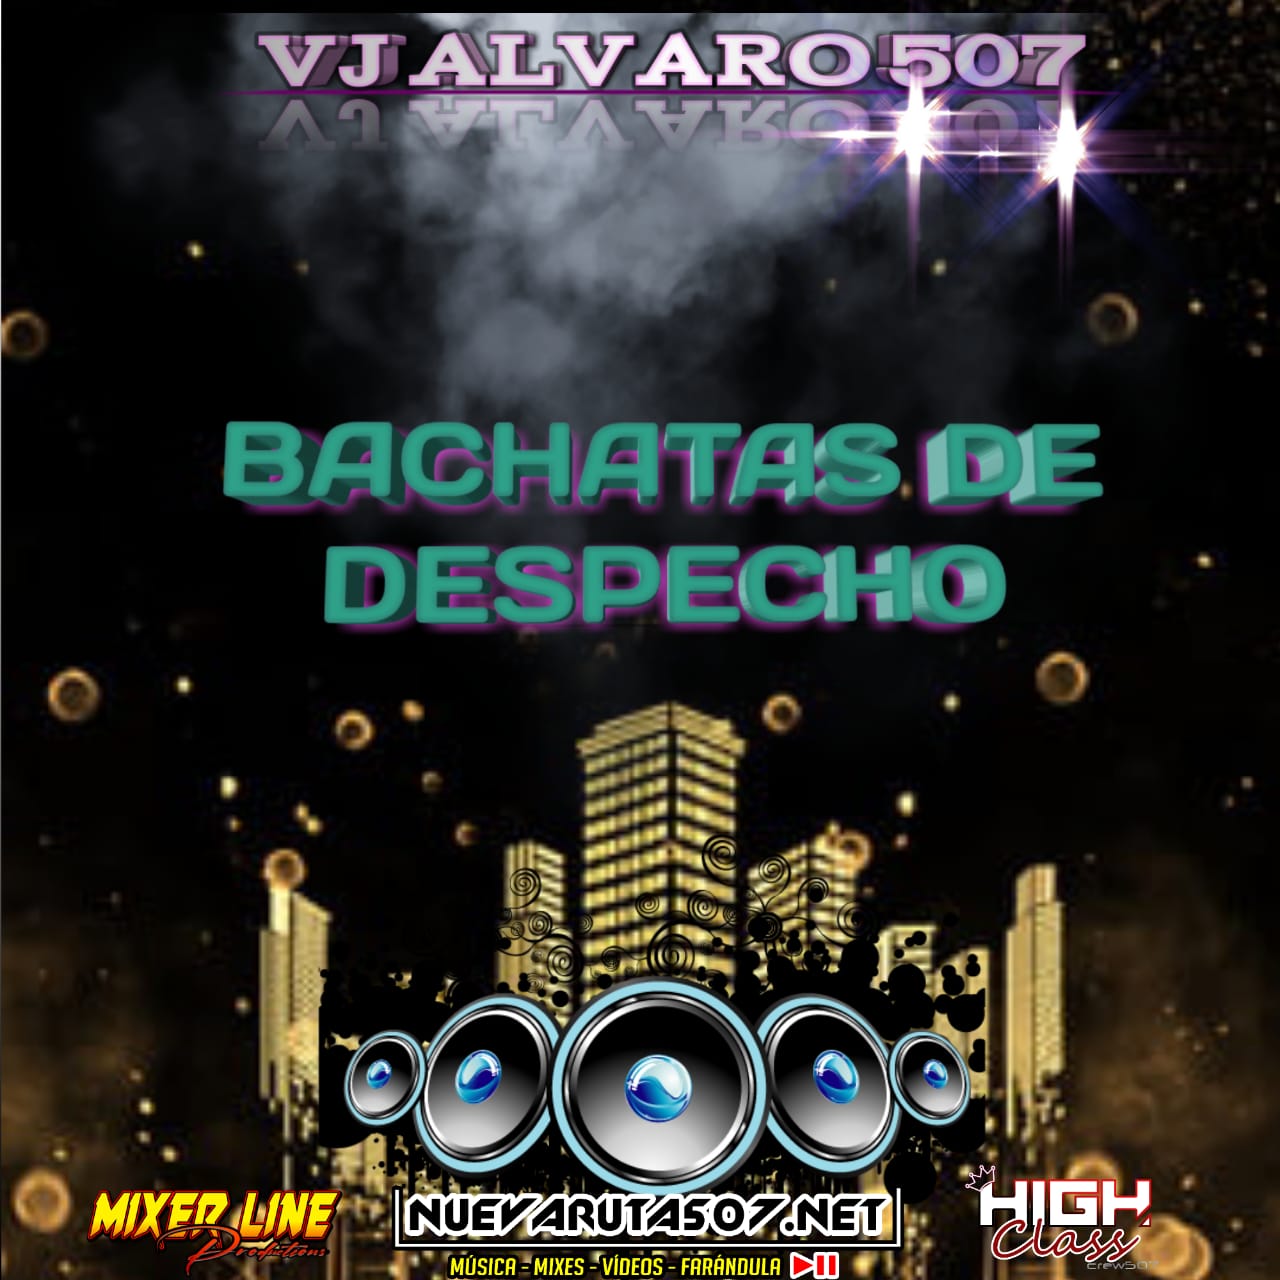 BACHATAS DE DESPECHO - VJ ALVARO507.mp3